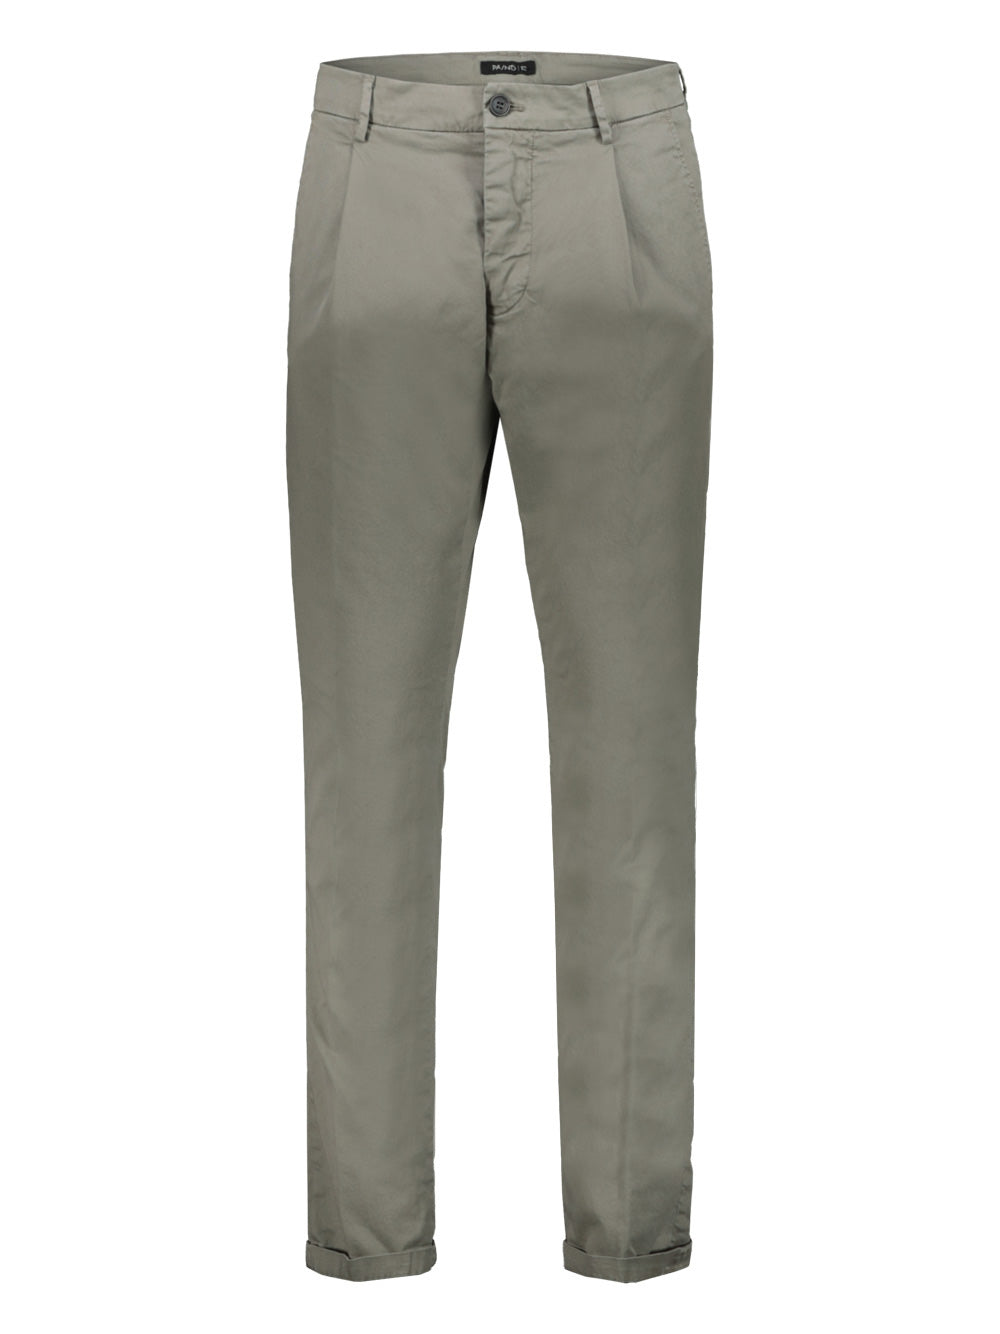 Pantalone Uomo Pa/nd 73 con pieghe, color antrachite- Visione frontale